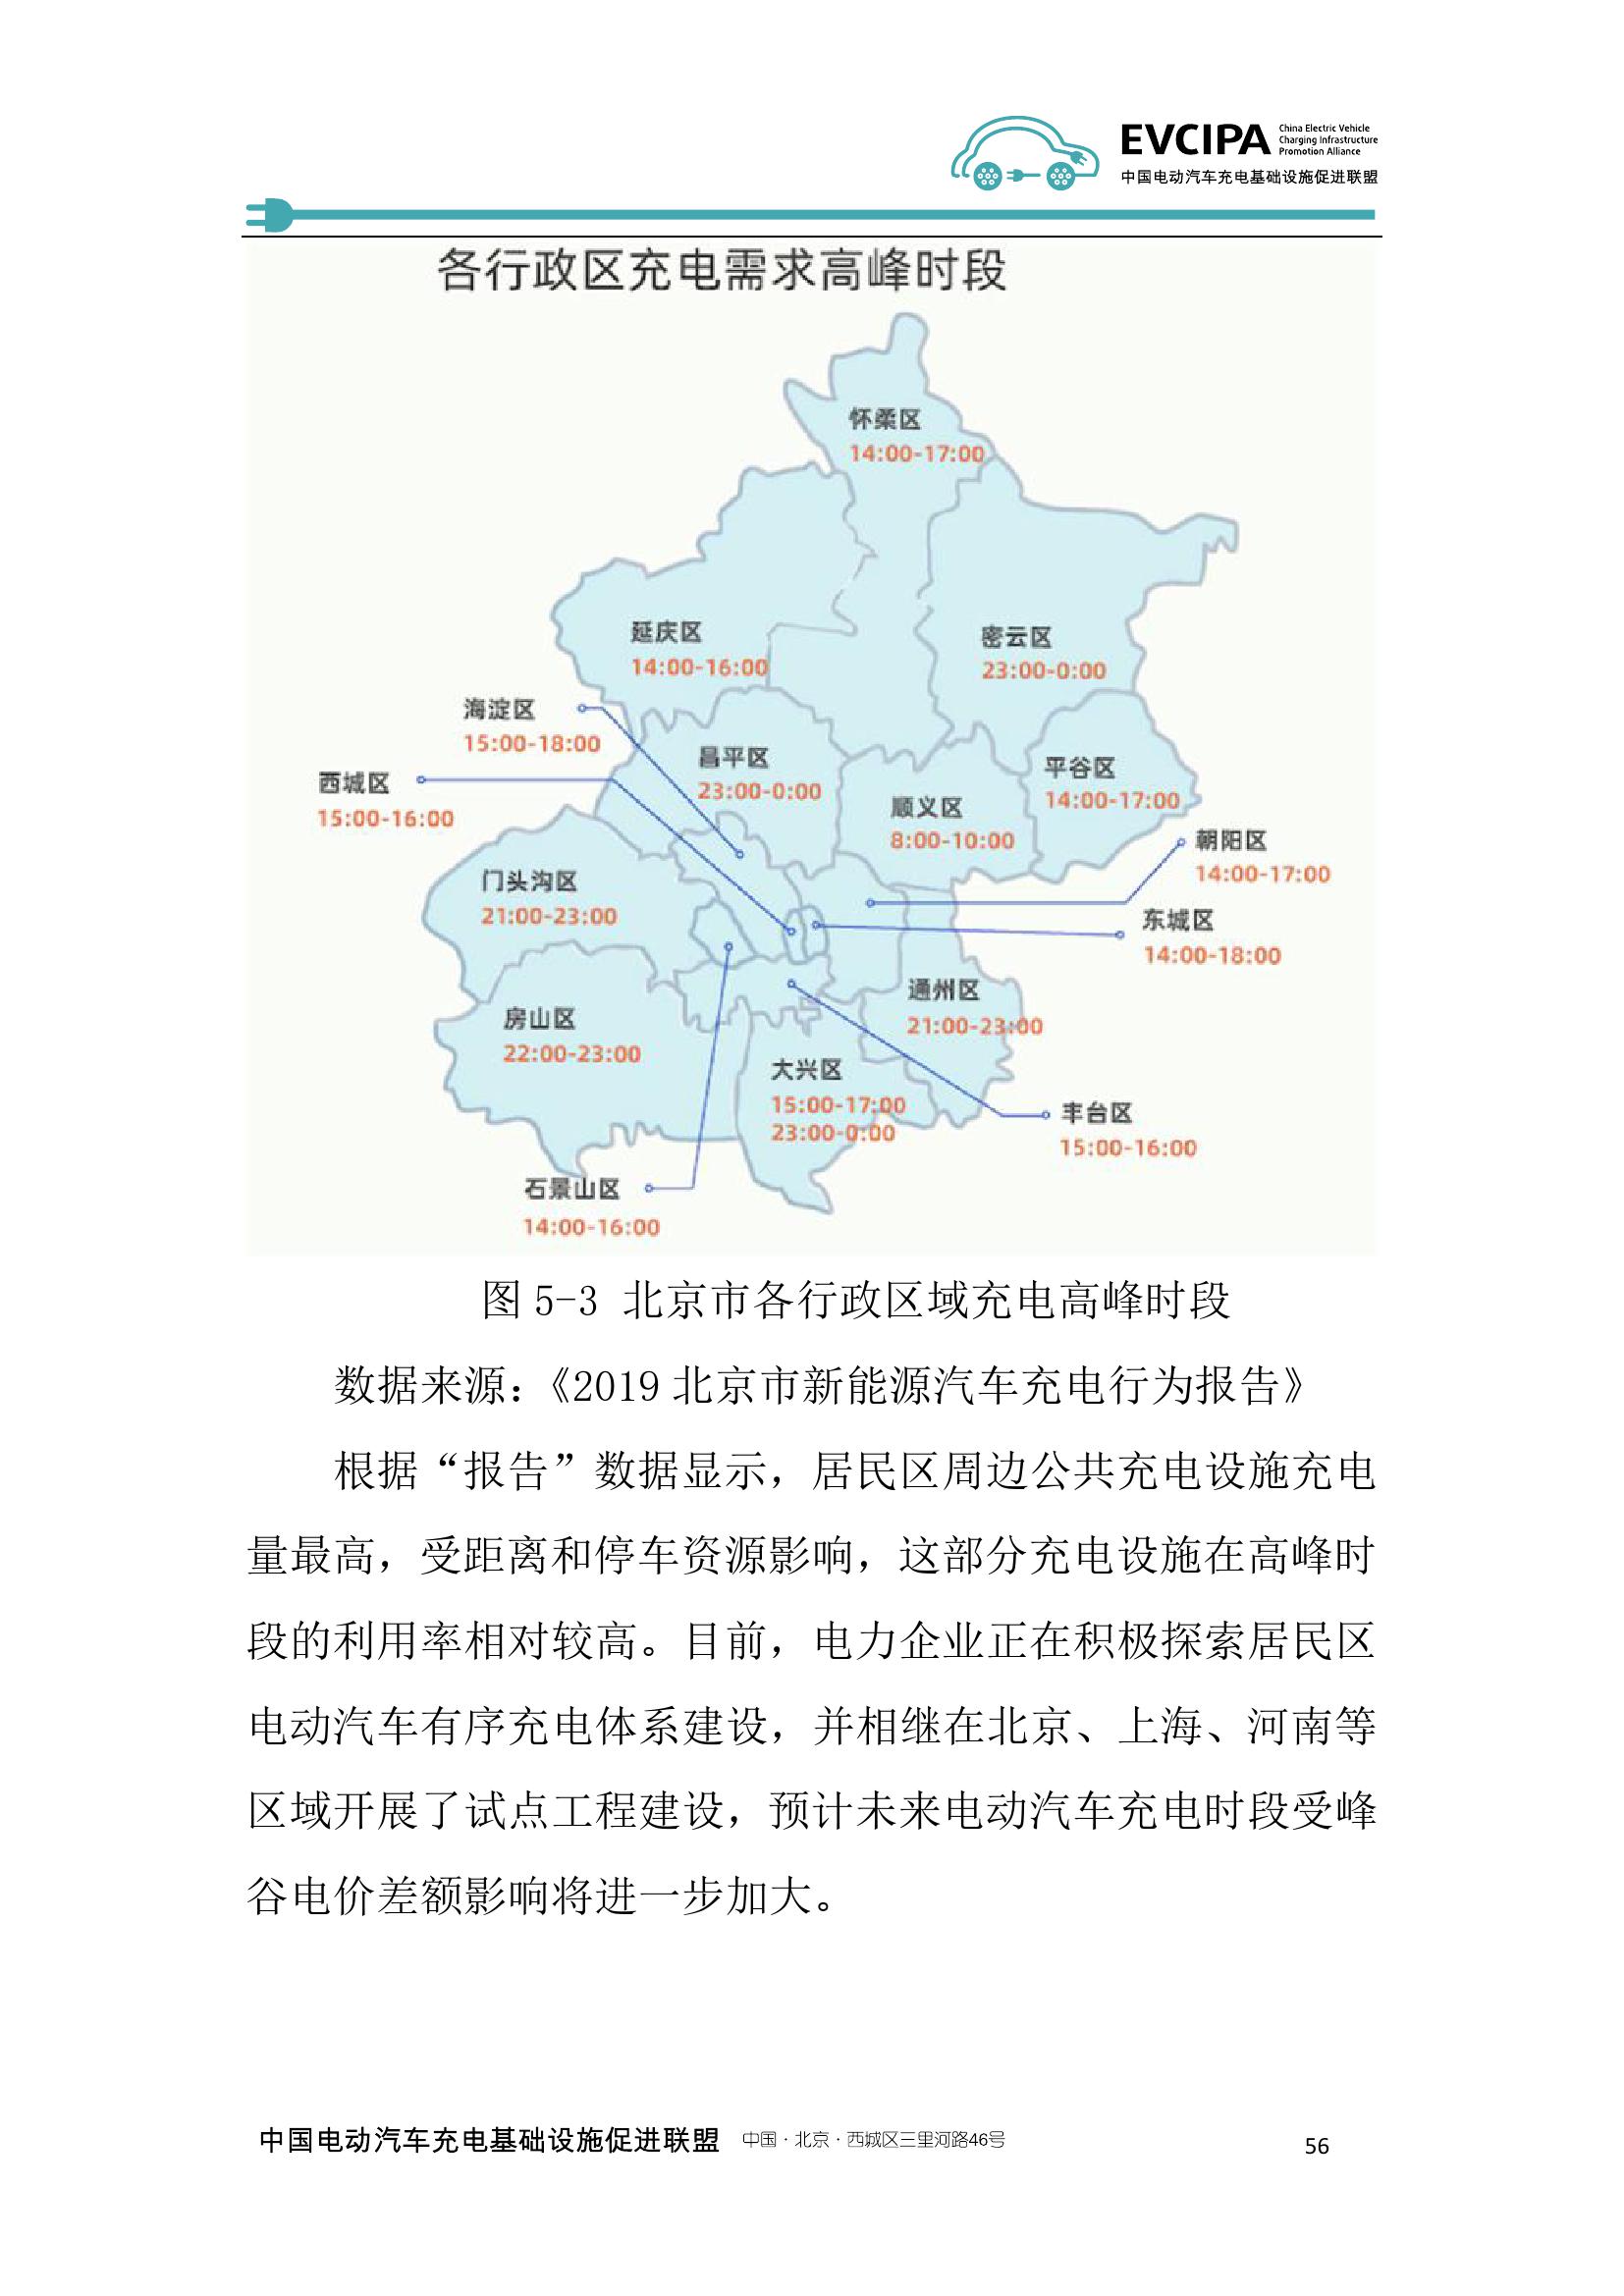 2019-2020年度中国充电基础设施发展报告_000064.jpg